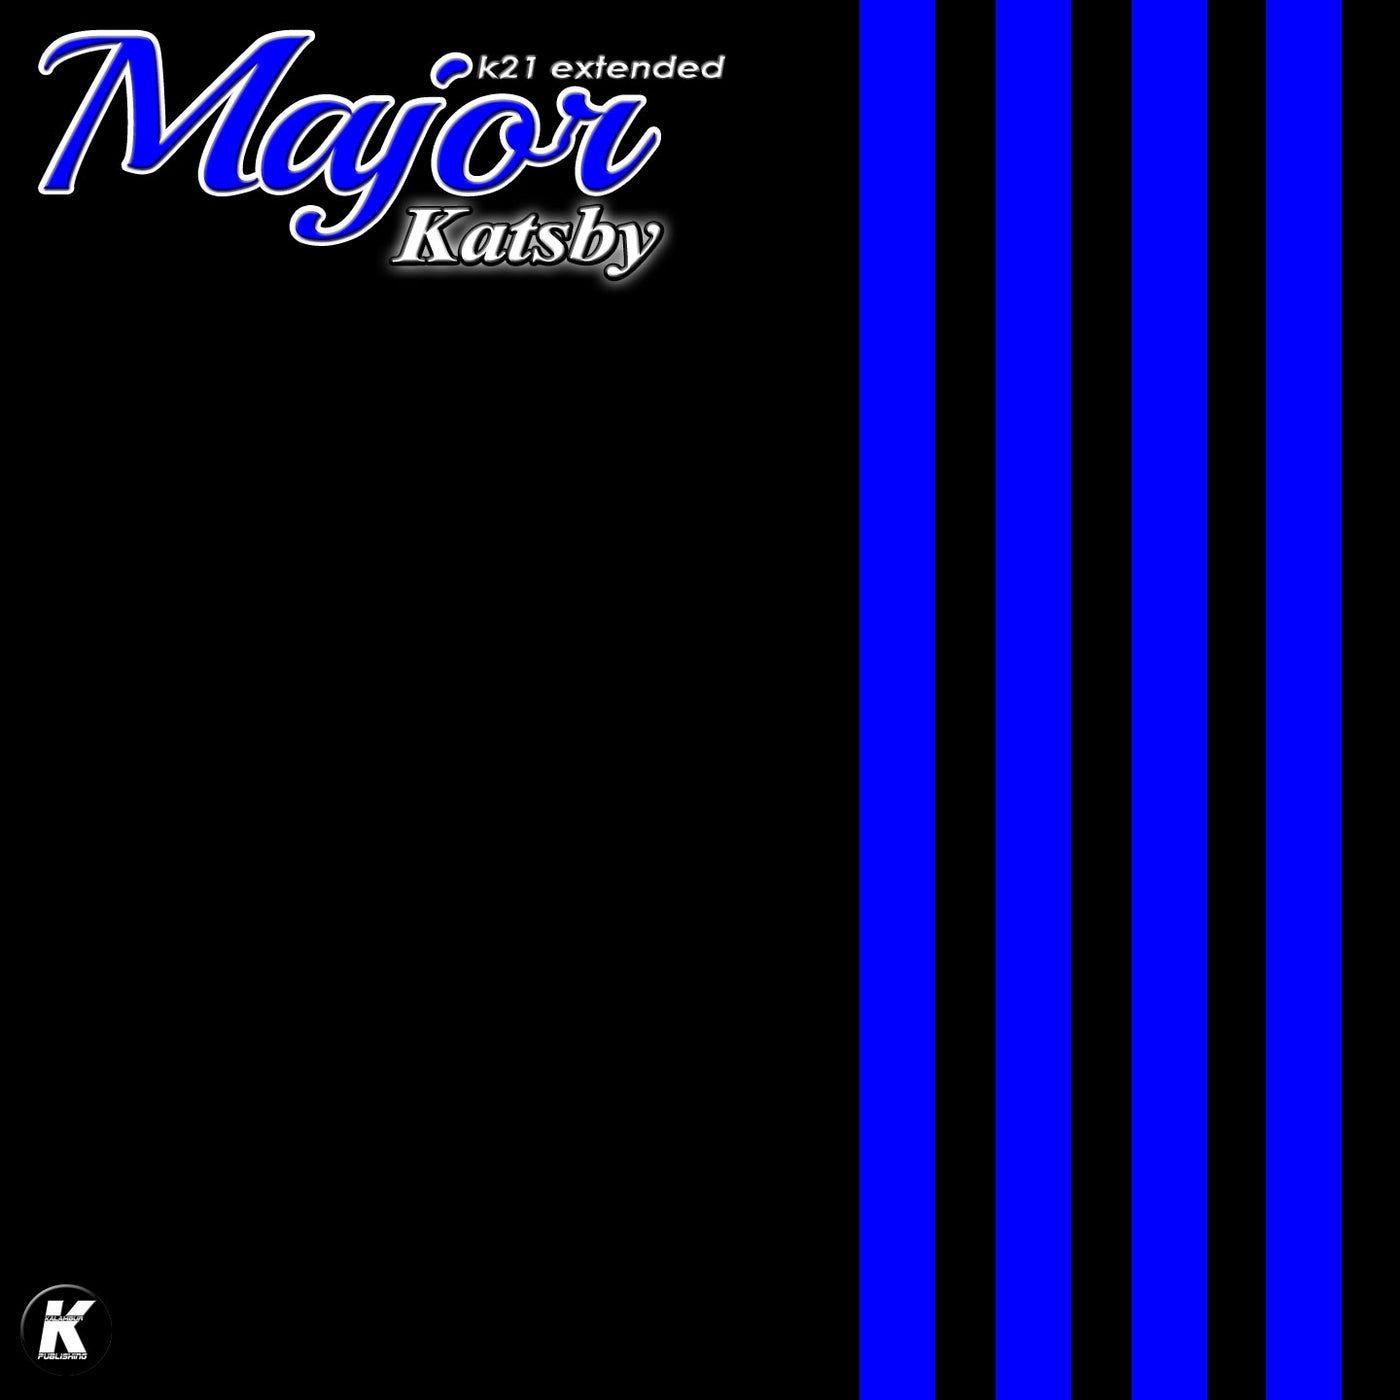 Katsby (K21 extended)